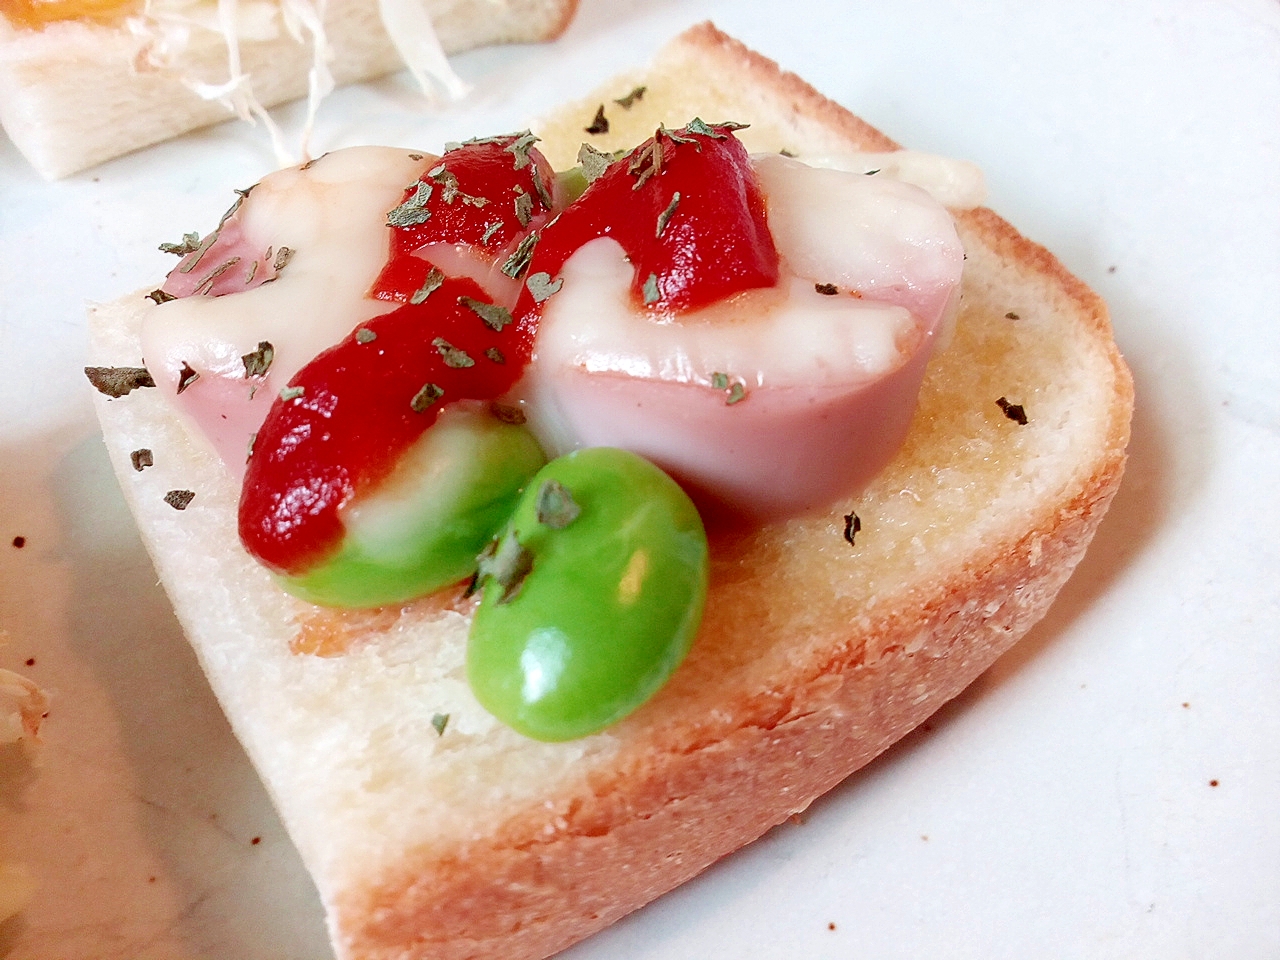 魚肉ソーセージ・枝豆・チーズのミニトースト